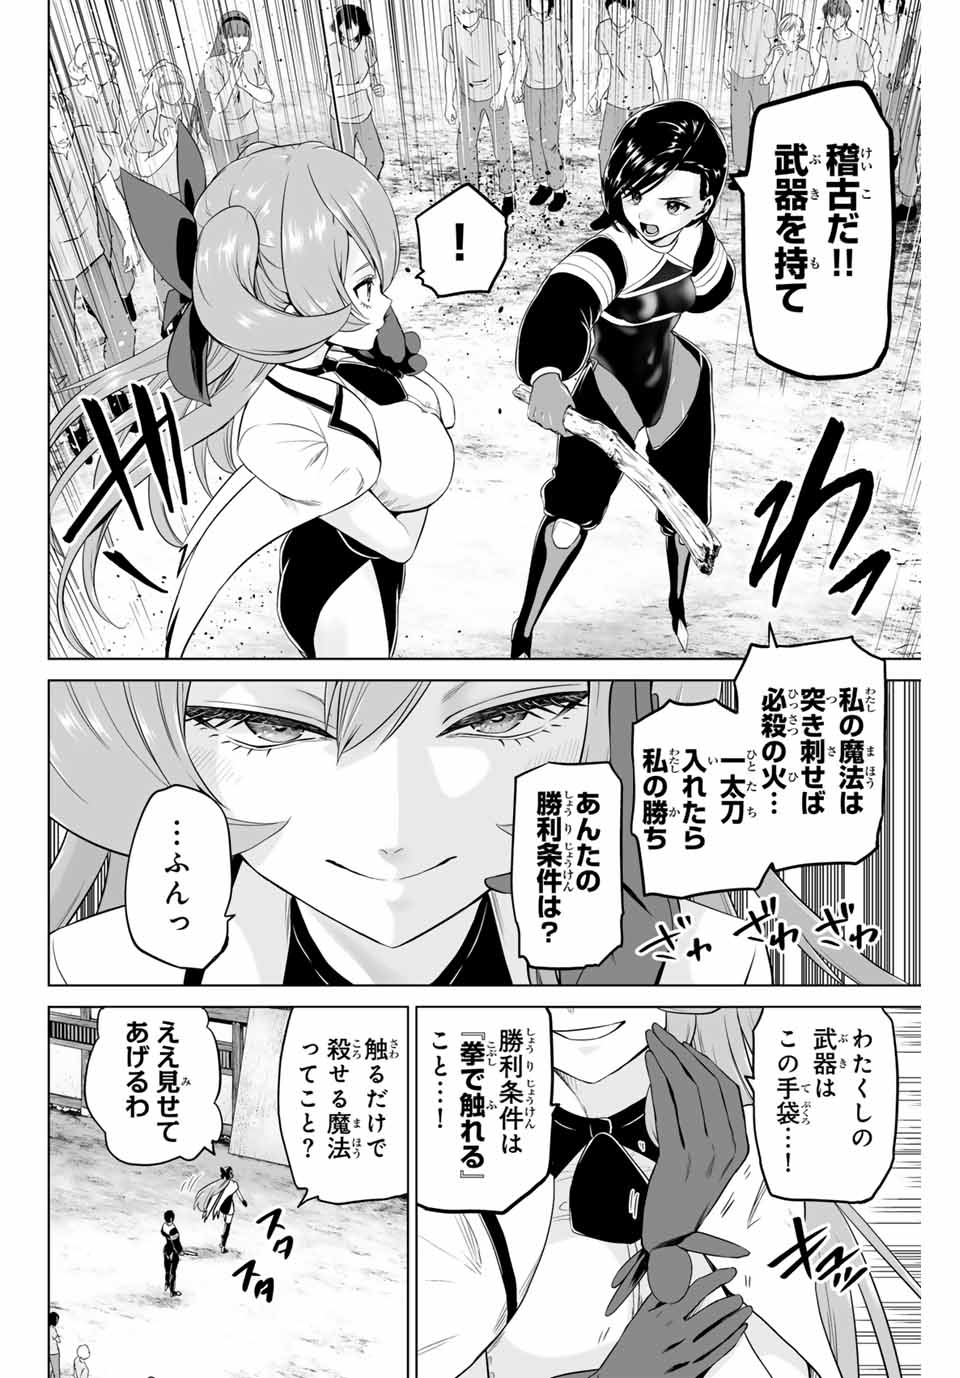 Gunshin No Takuto - Chapter 21 - Page 4